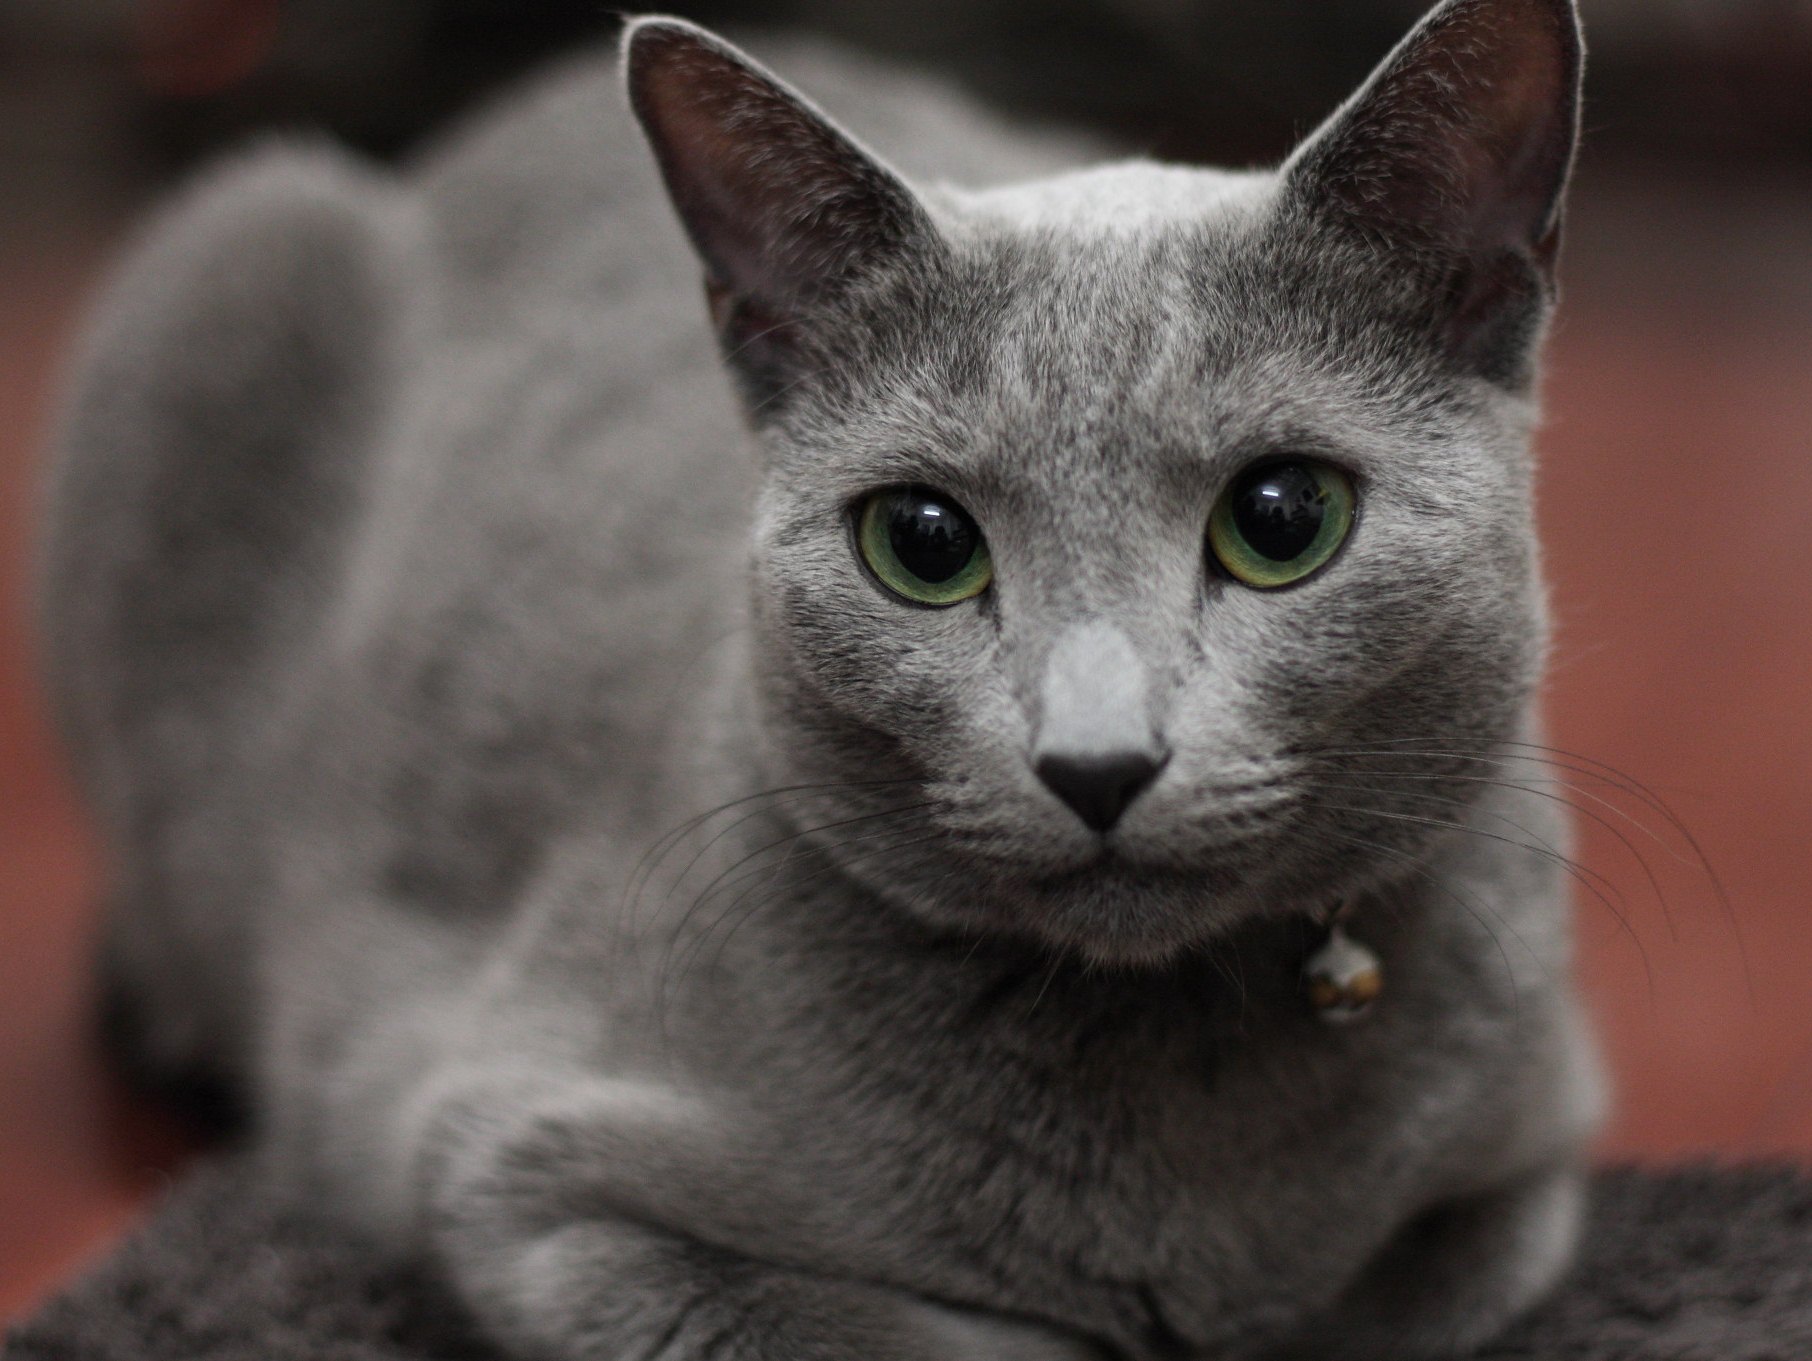 "Русская голубая кошка"- самый популярный запрос в мире, связанный с Россией